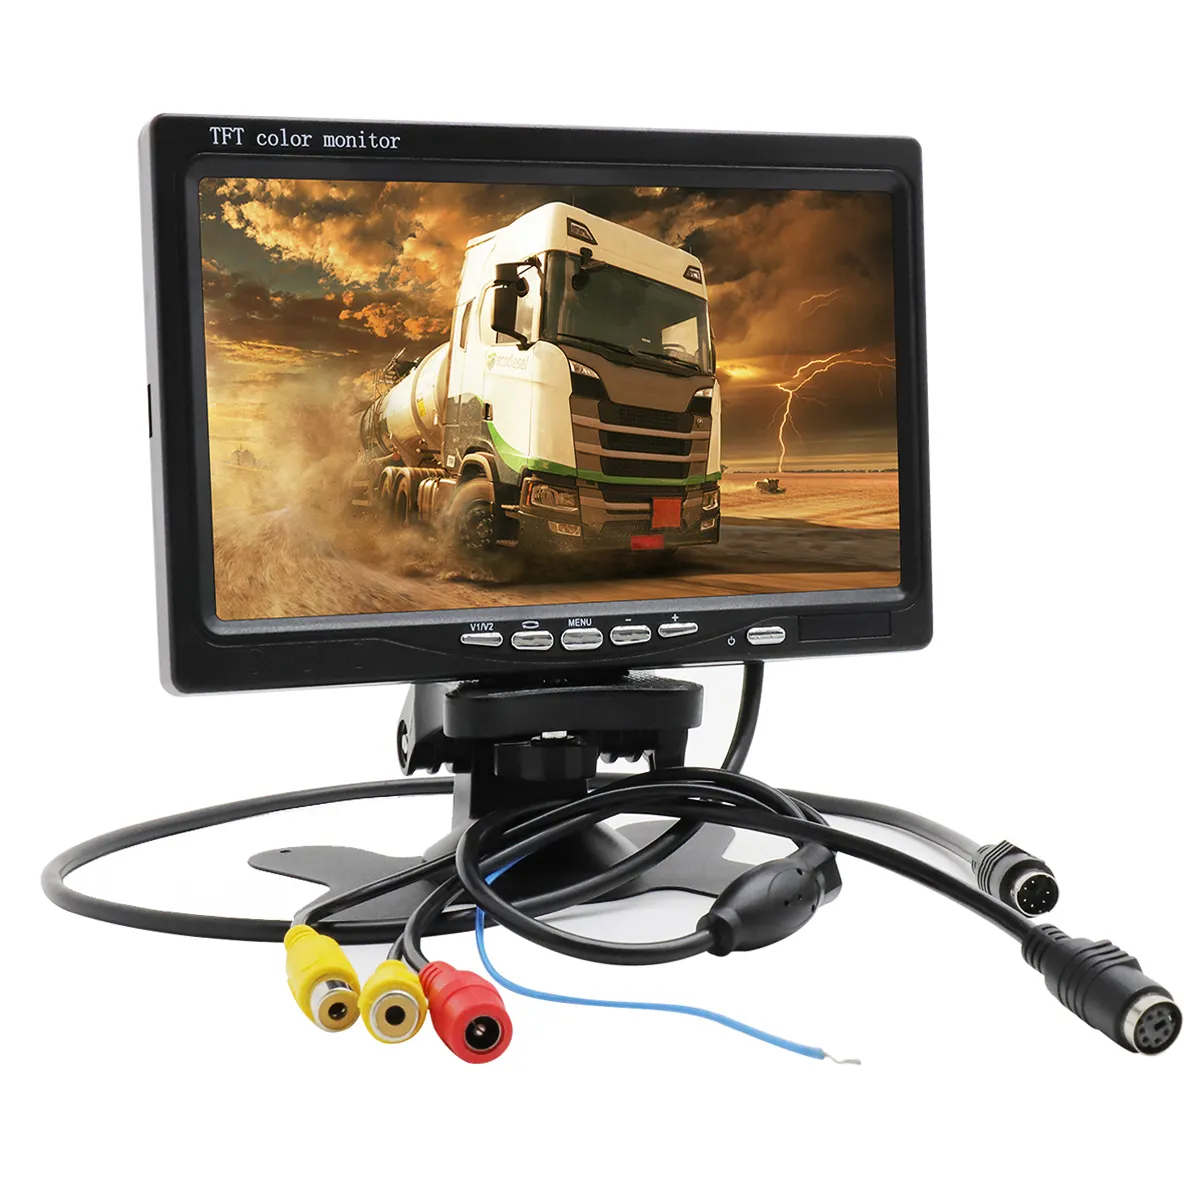 Pantalla de Monitor de 7 pulgadas para coche, 12V-24V, pantalla TFT LCD HD a Color de 7 pulgadas para CCTV automático, soporte o carcasa de cámara de respaldo de visión trasera inversa